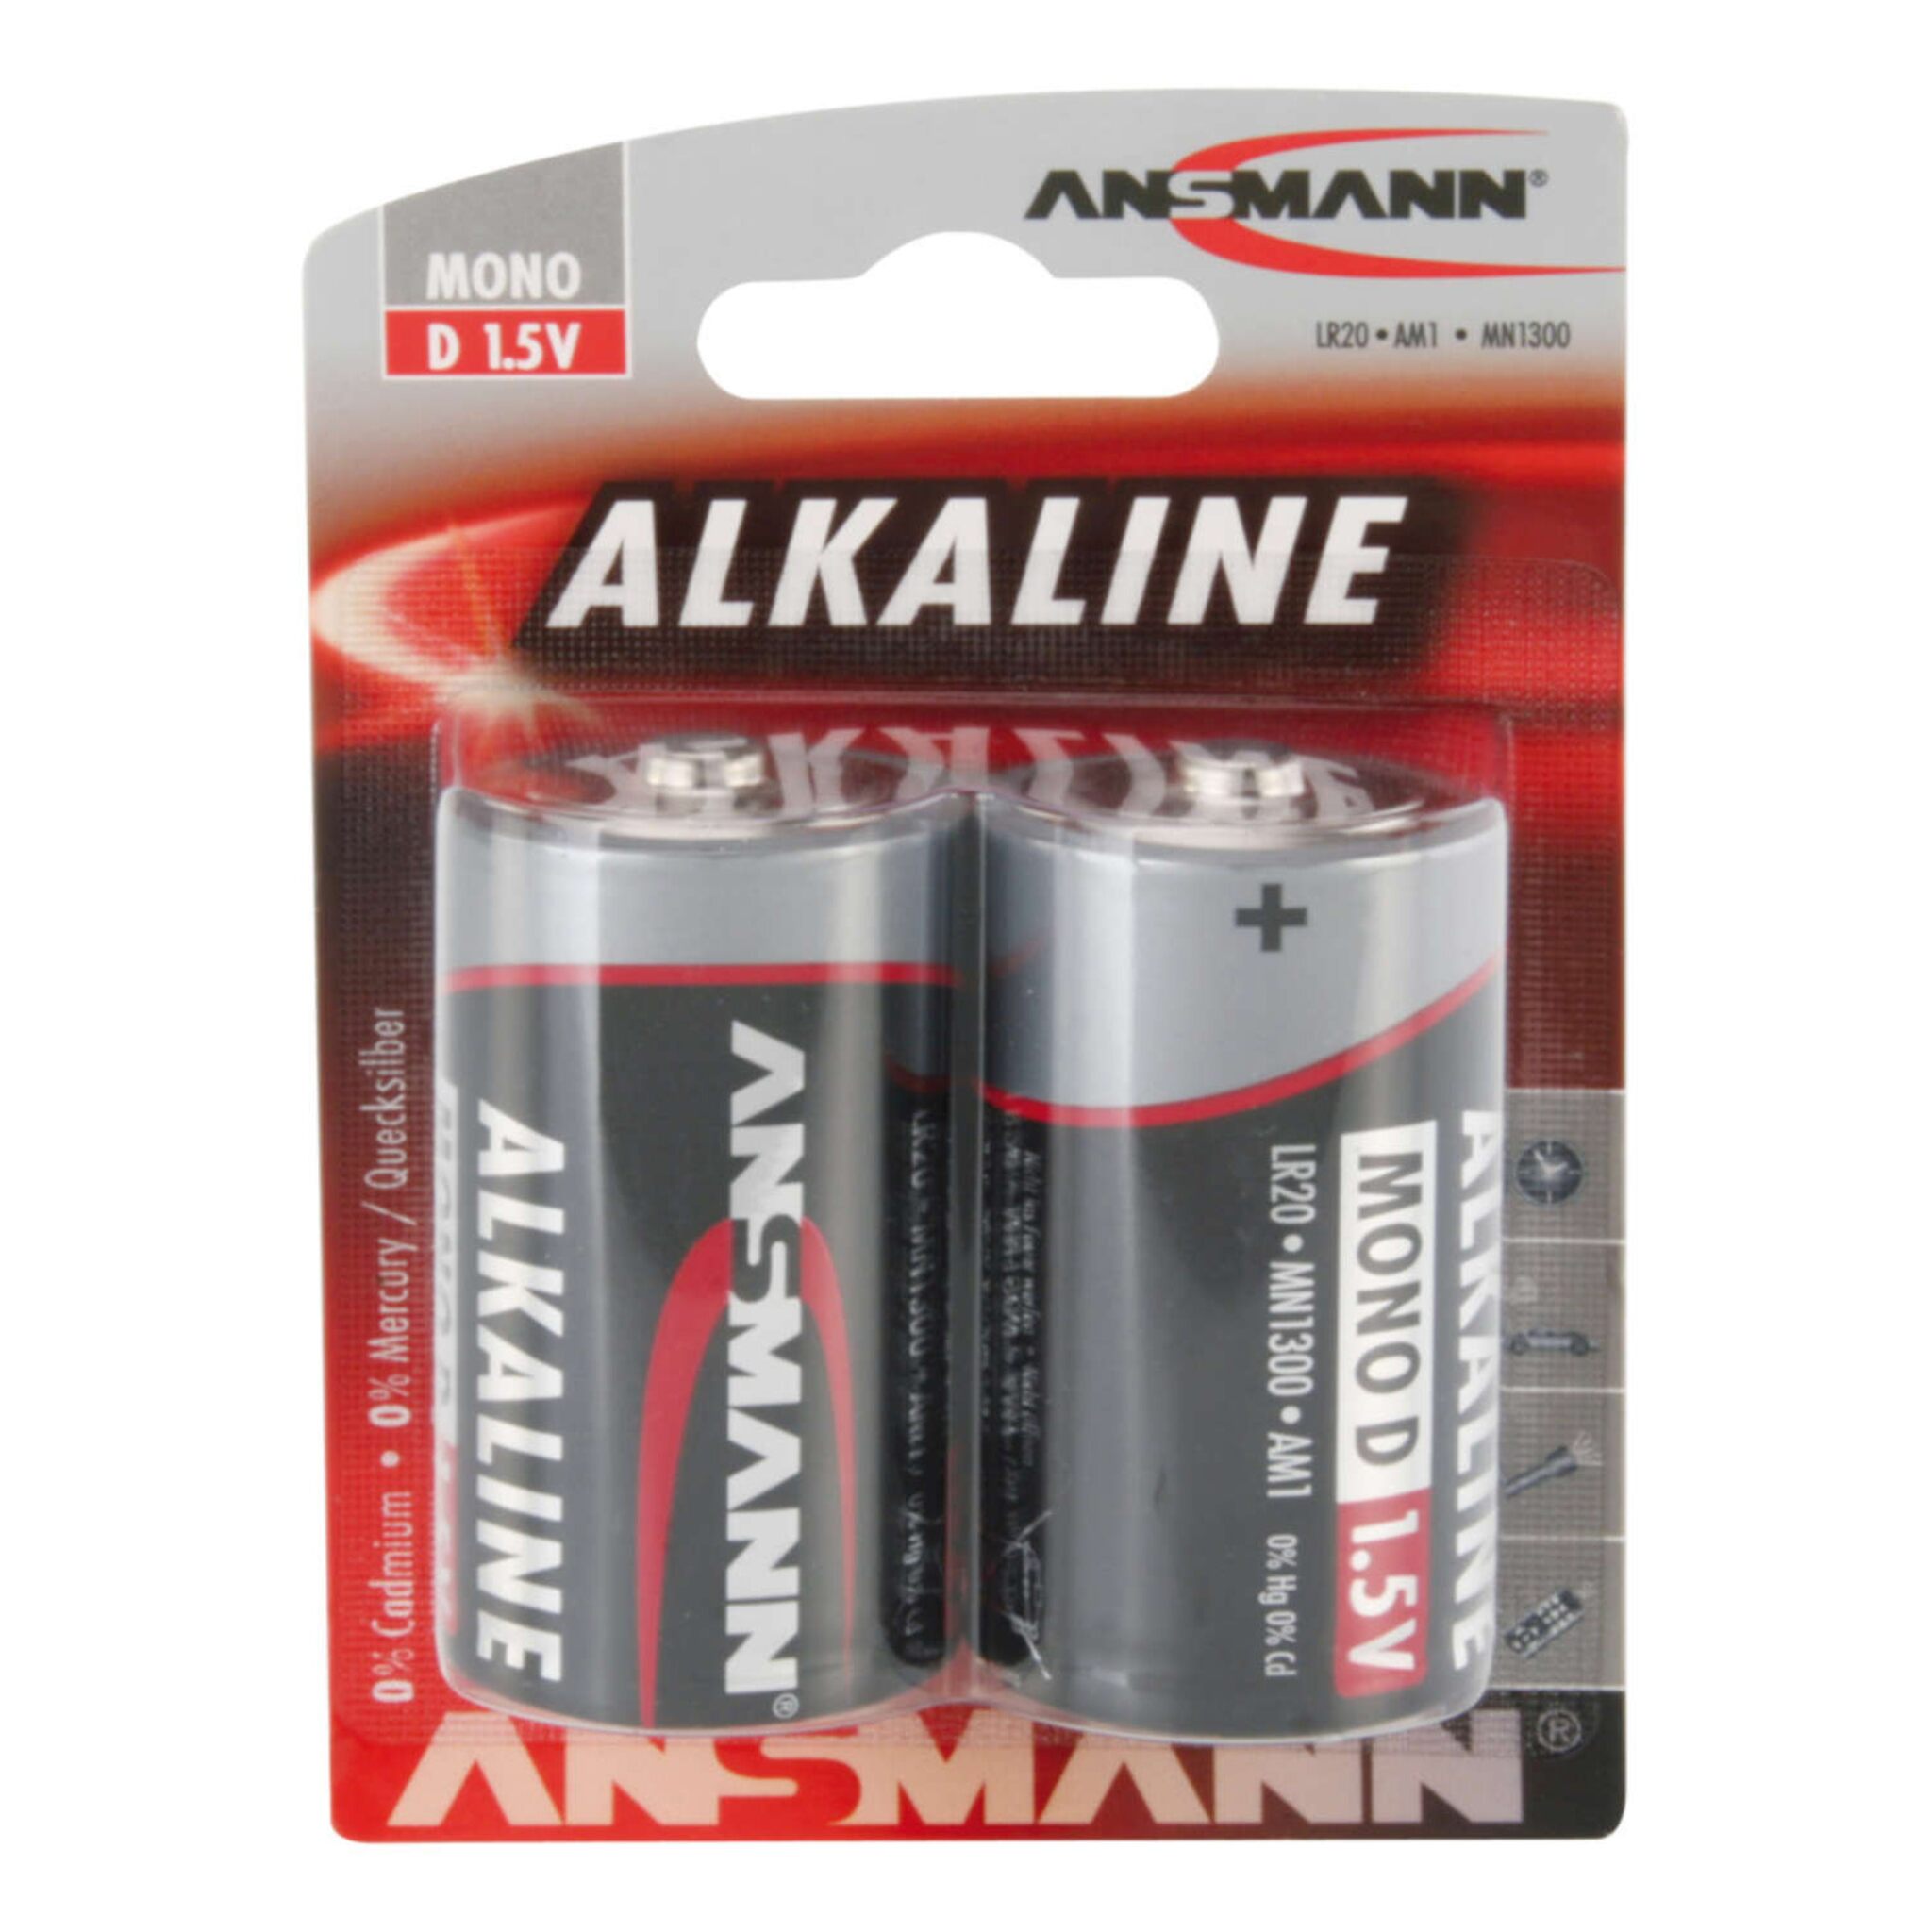 Alkaline Battery Mono / D / LR20 - Blister of 2